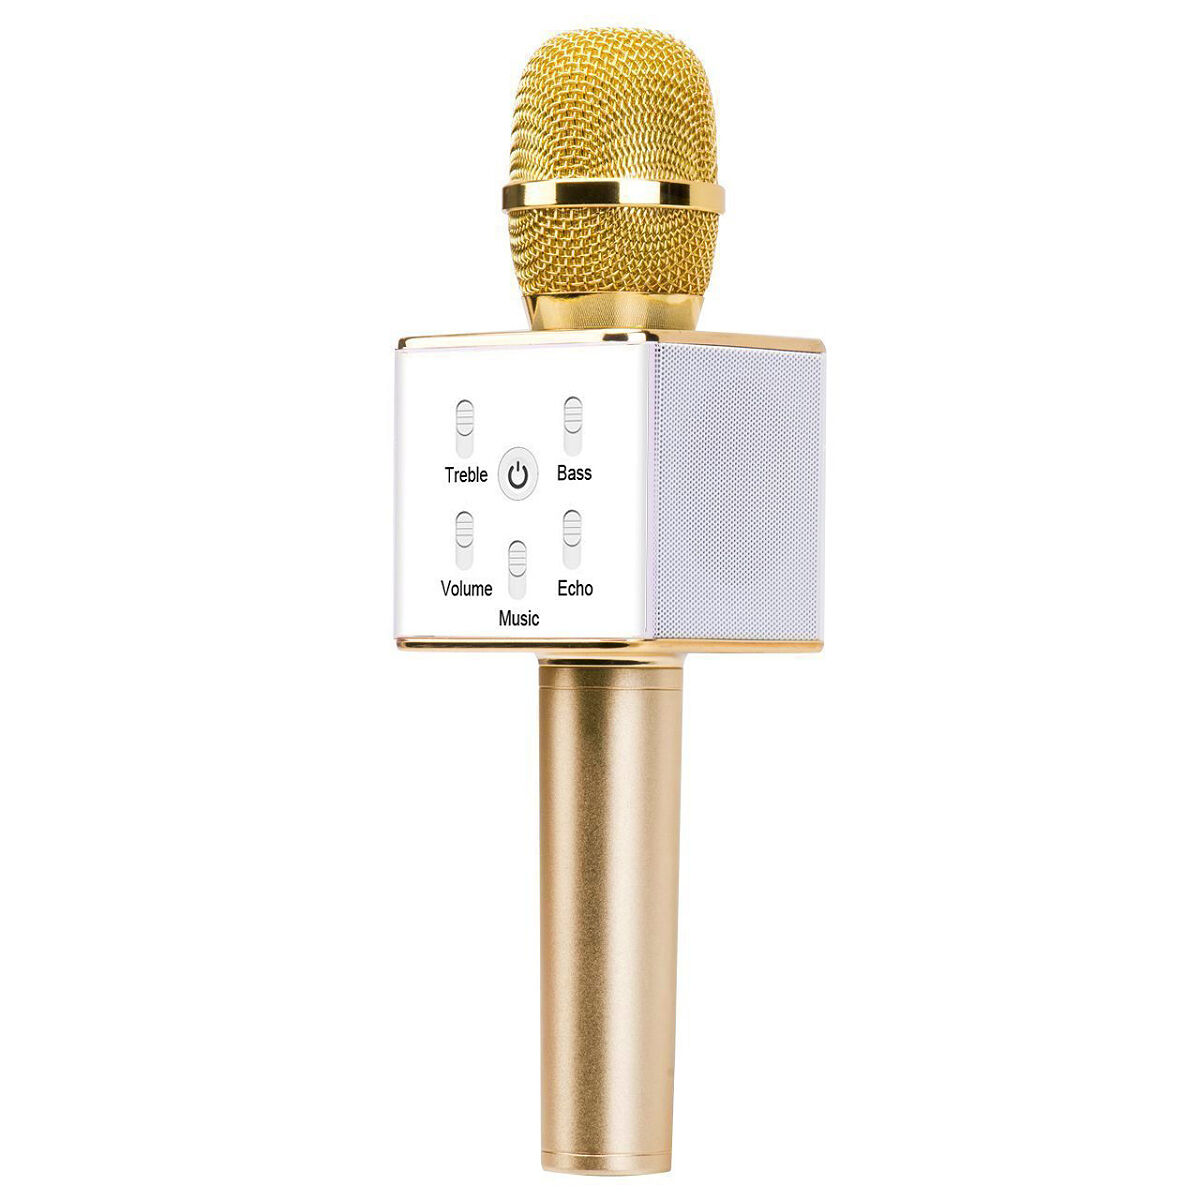 Portable W ireless Karaoke Microphone,Built-in B luetooth Speaker